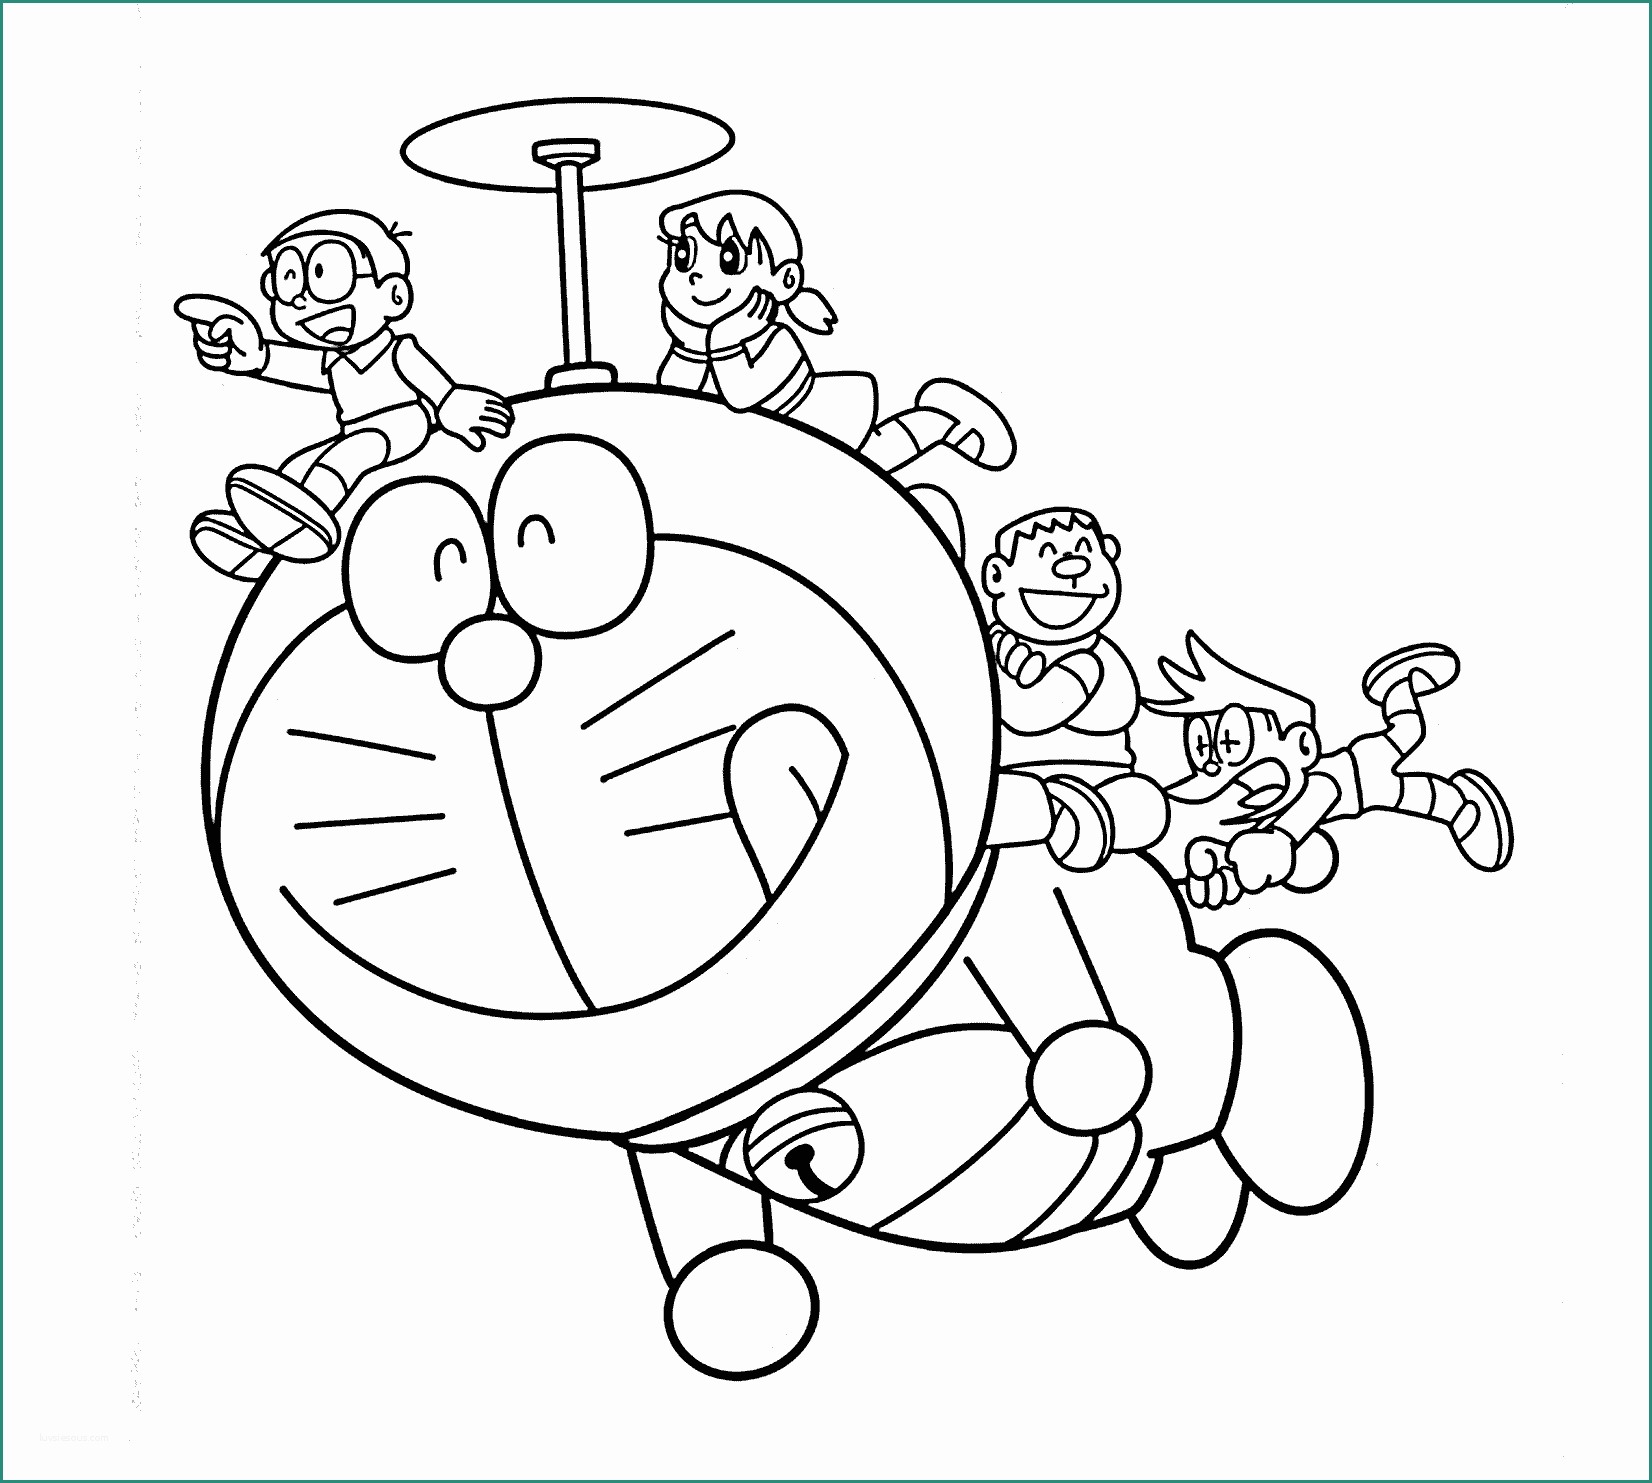 Giochi Di Doraimon E Impressionante Doraemon Disegni Da Colorare Per Bambini